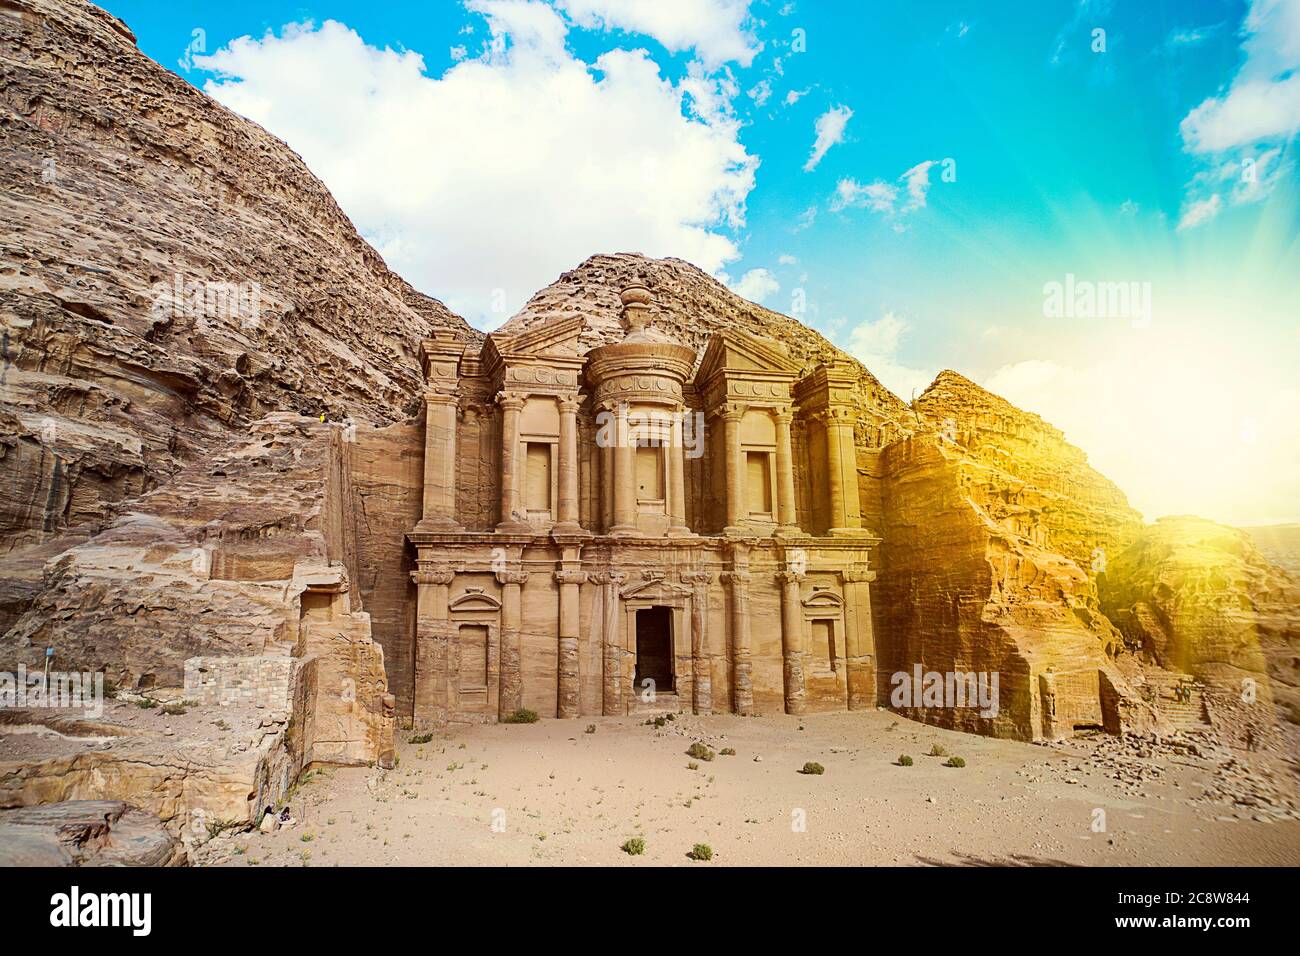 Vue imprenable depuis une grotte de l'ad Deir - Monastère dans l'ancienne ville de Pétra, en Jordanie : incroyable site classé au patrimoine mondial de l'UNESCO. Attractions célèbres Banque D'Images